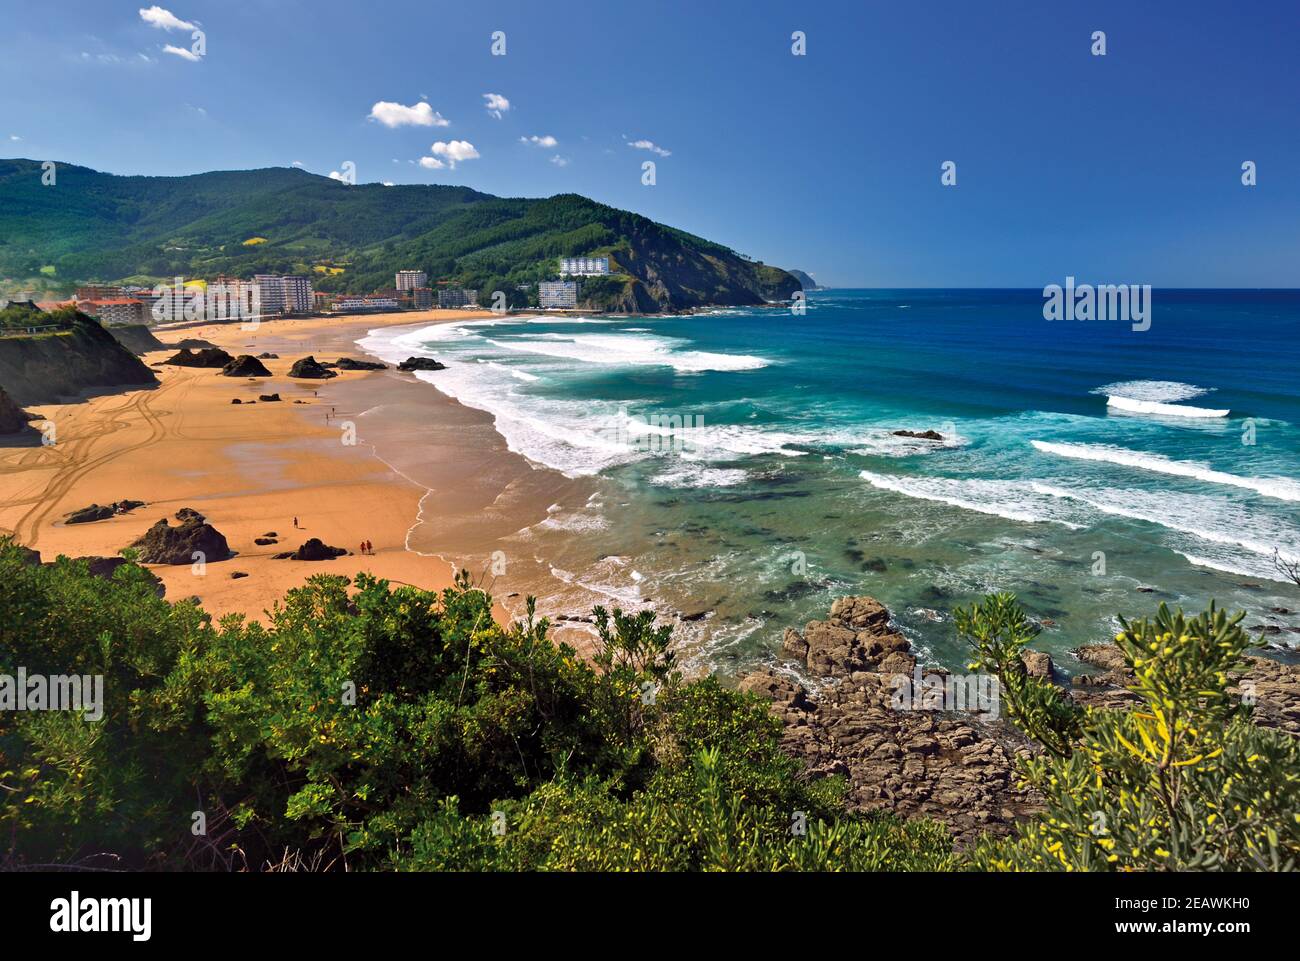 Vue sur la plage de sable avec l'océan bleu et les vagues blanches entouré de collines verdoyantes Banque D'Images